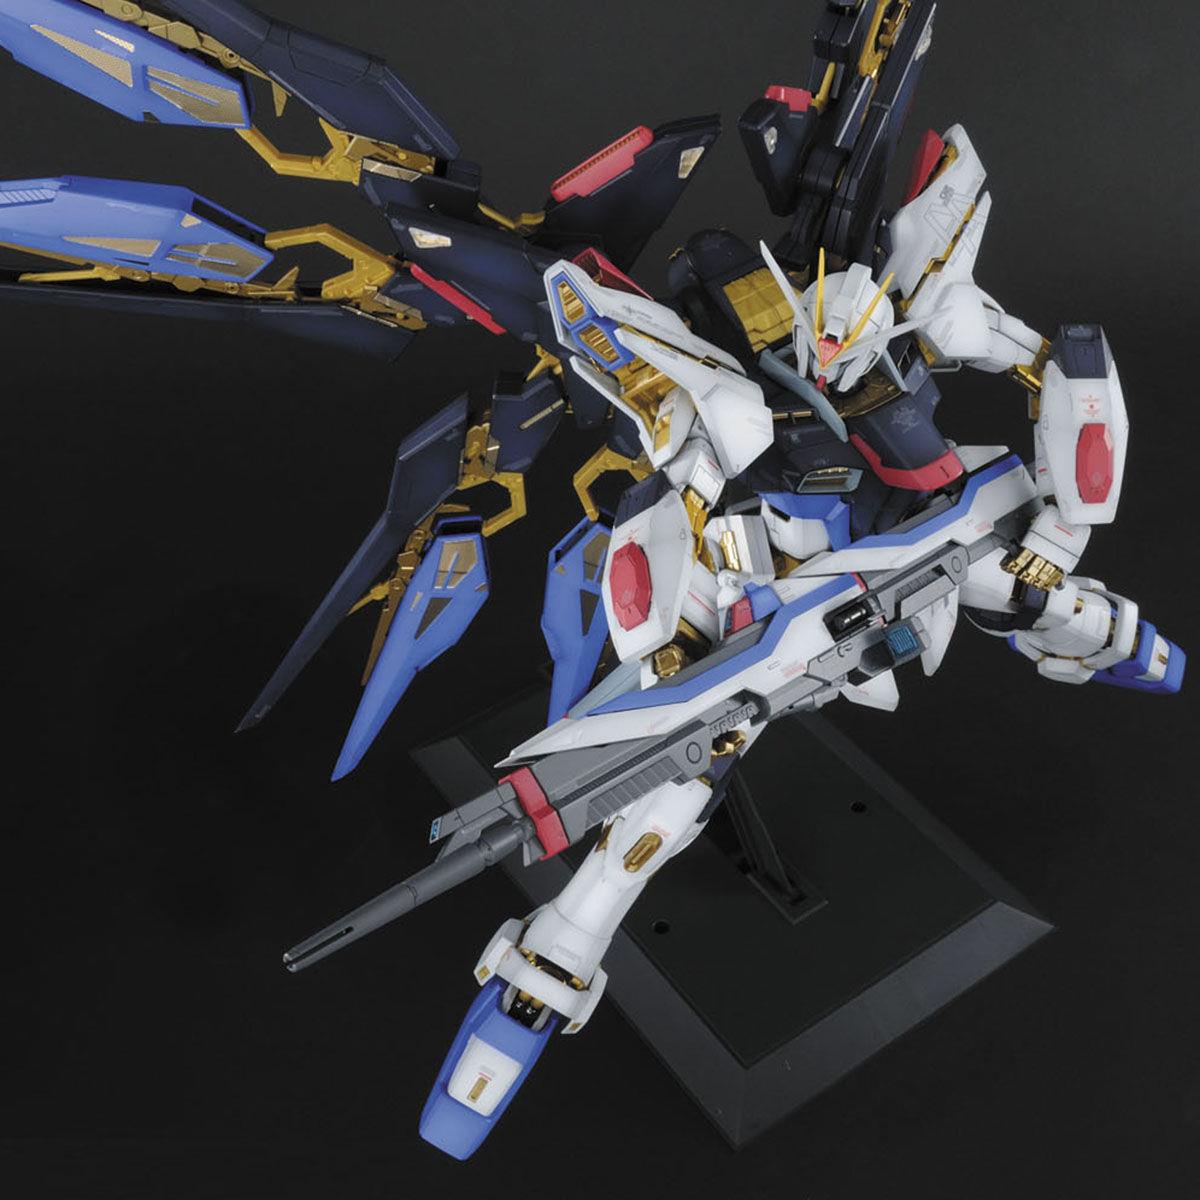 Gundam: Strike Freedom Gundam PG Model